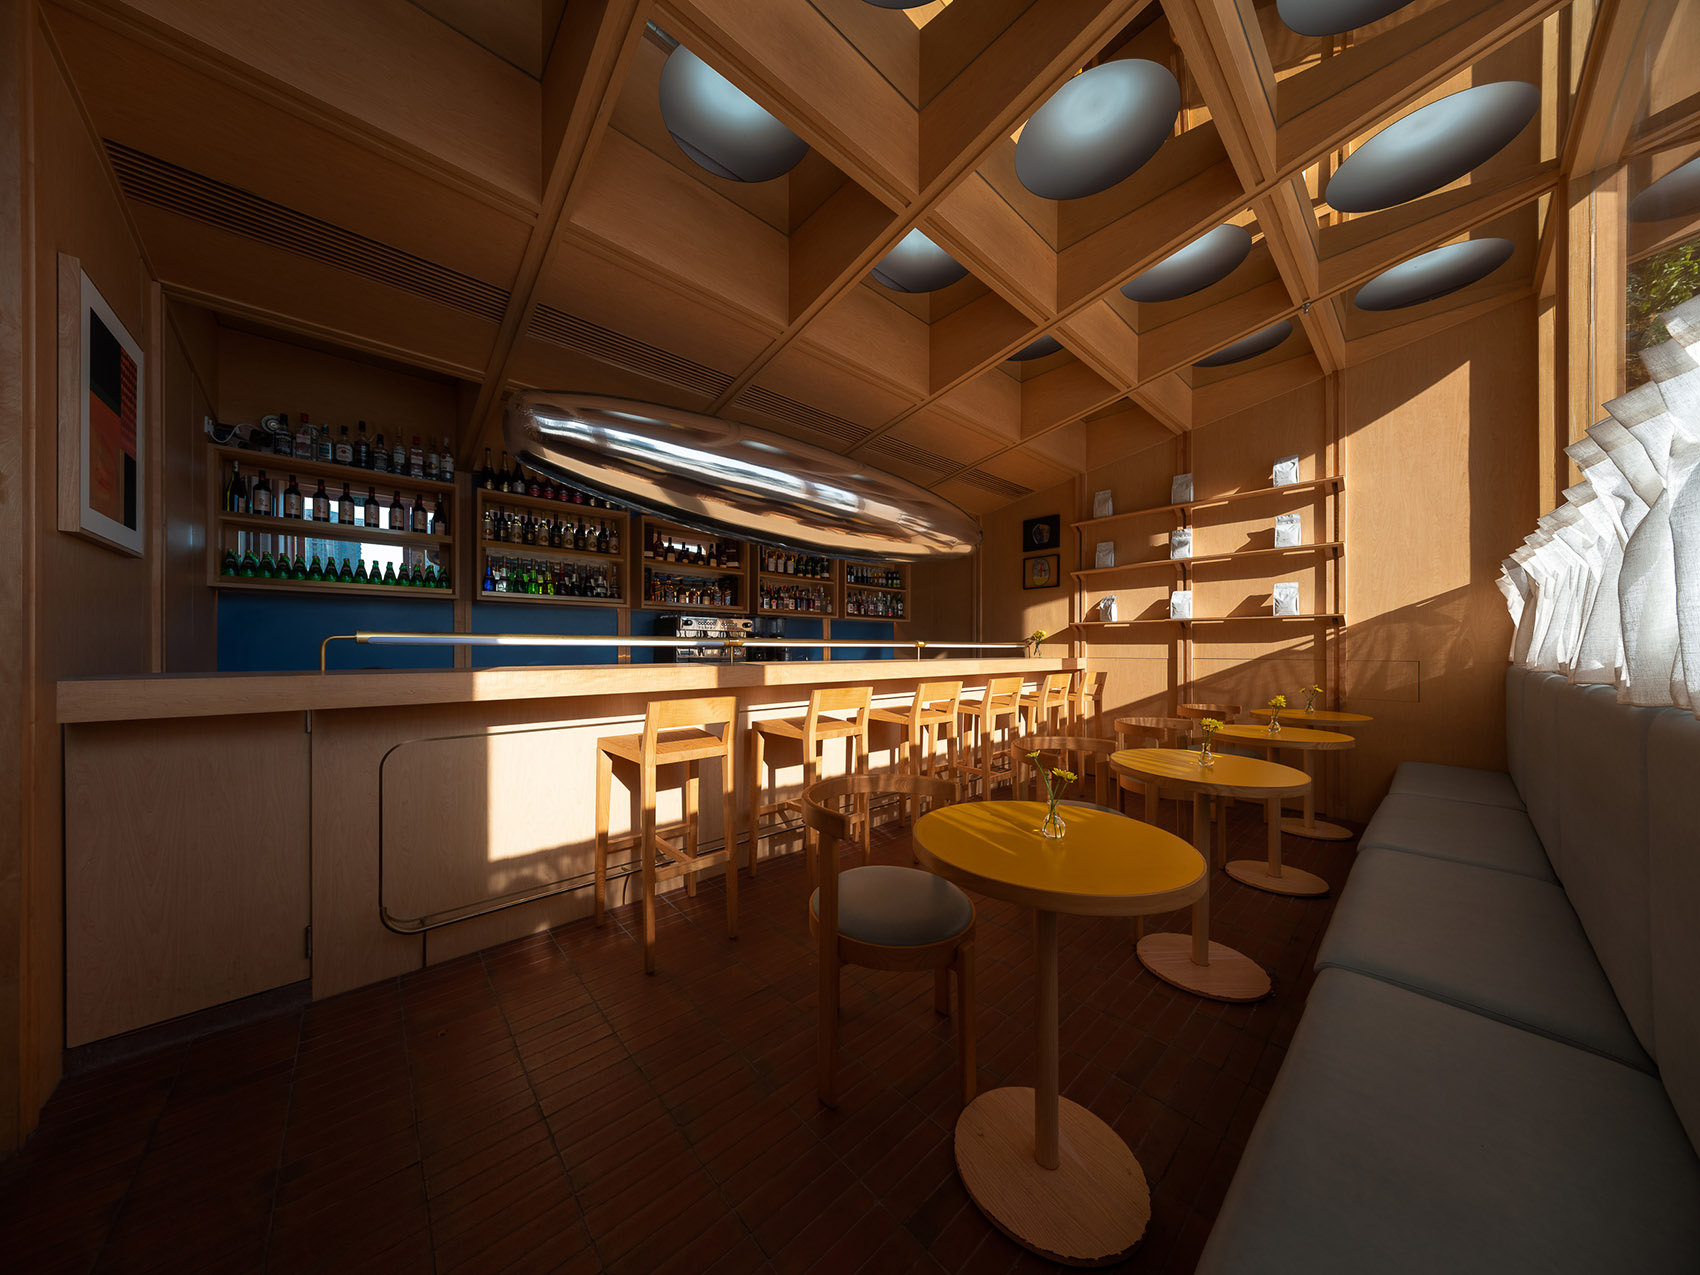 浮廊C2 Cafe &  Bar咖啡厅，深圳/专门为年轻人打造的“空中楼阁”-66